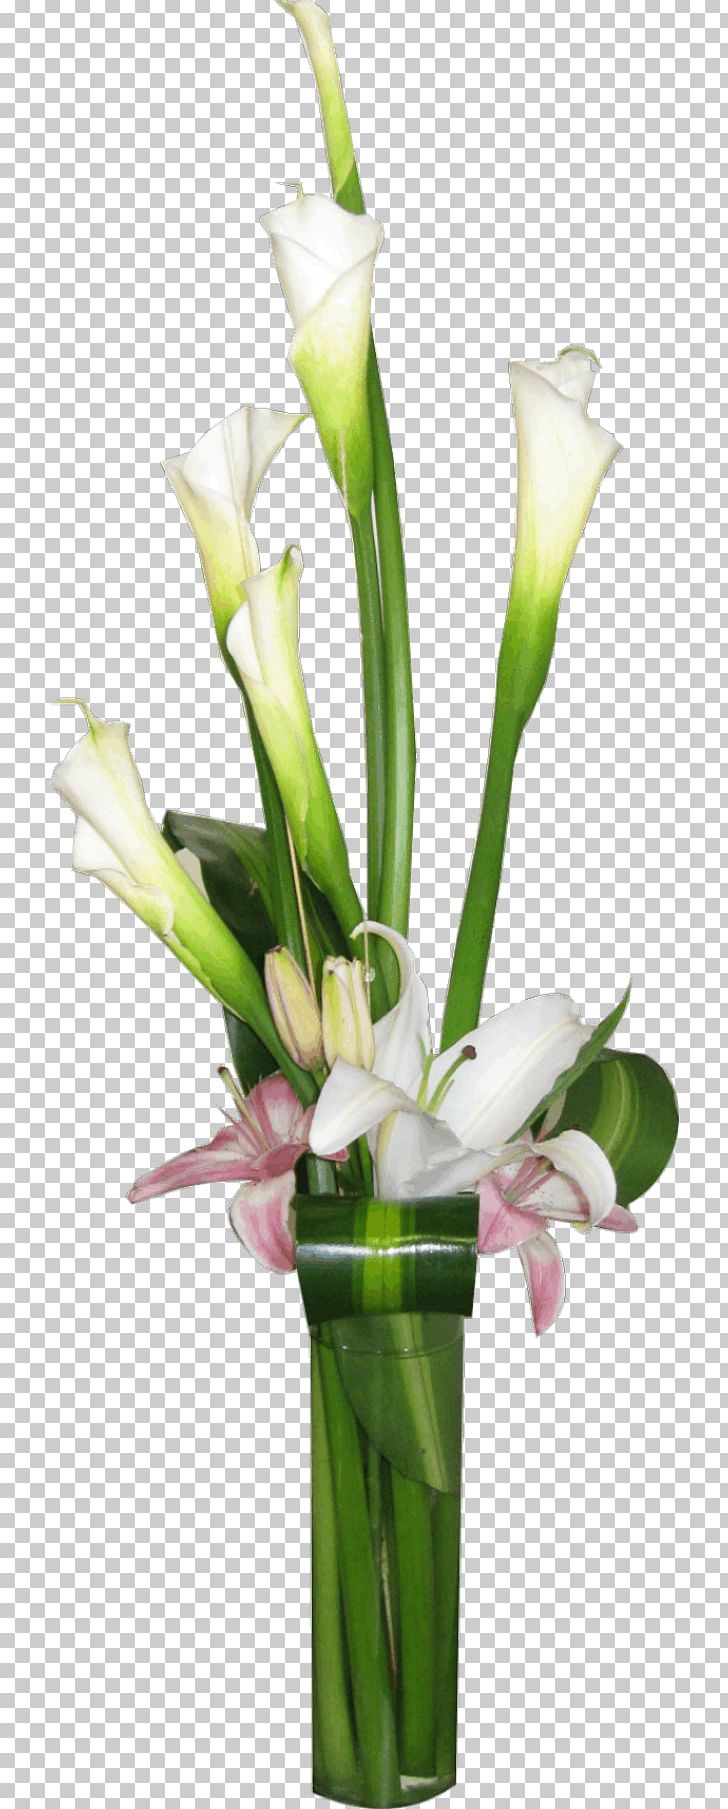 Floral Design Cut Flowers Vase Flower Bouquet PNG, Clipart, Artificial Flower, Bud, Centrepiece, Cut Flowers, Floral Design Free PNG Download